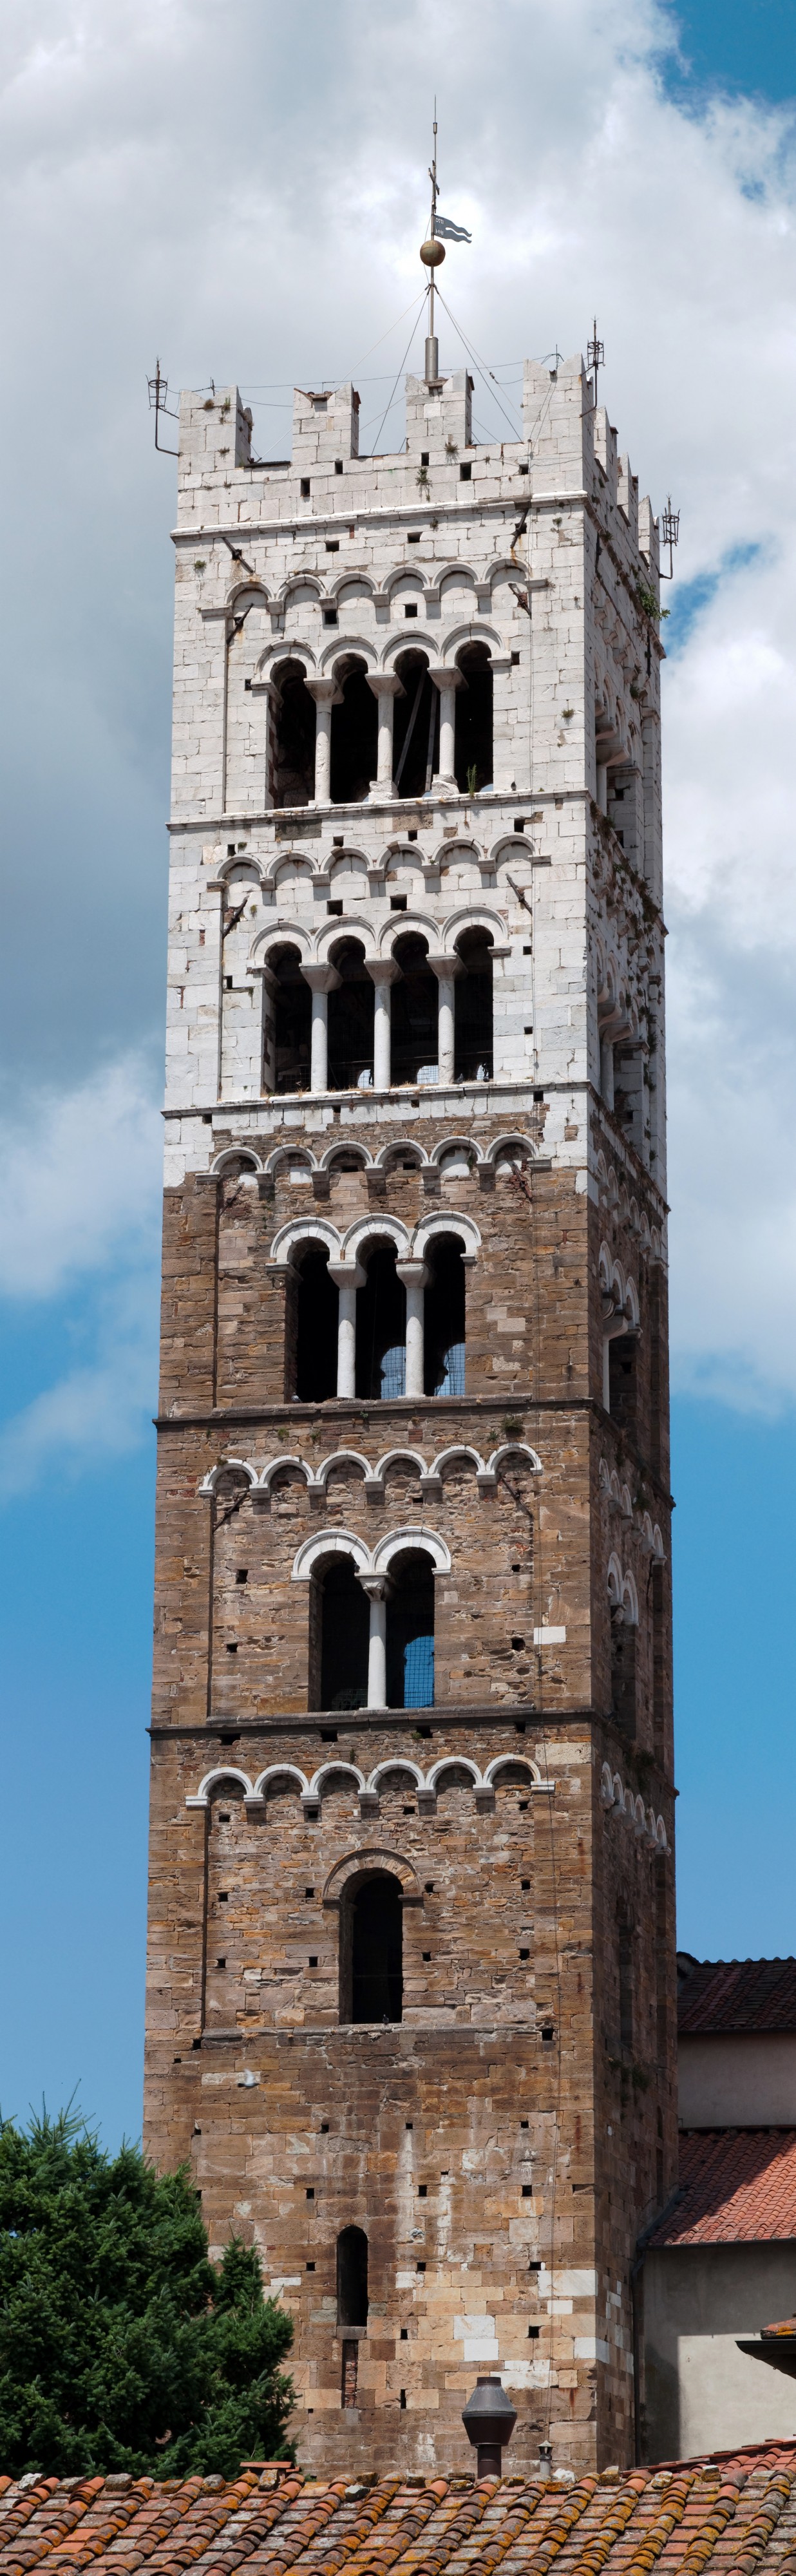 Campanile di Duomo di Lucca